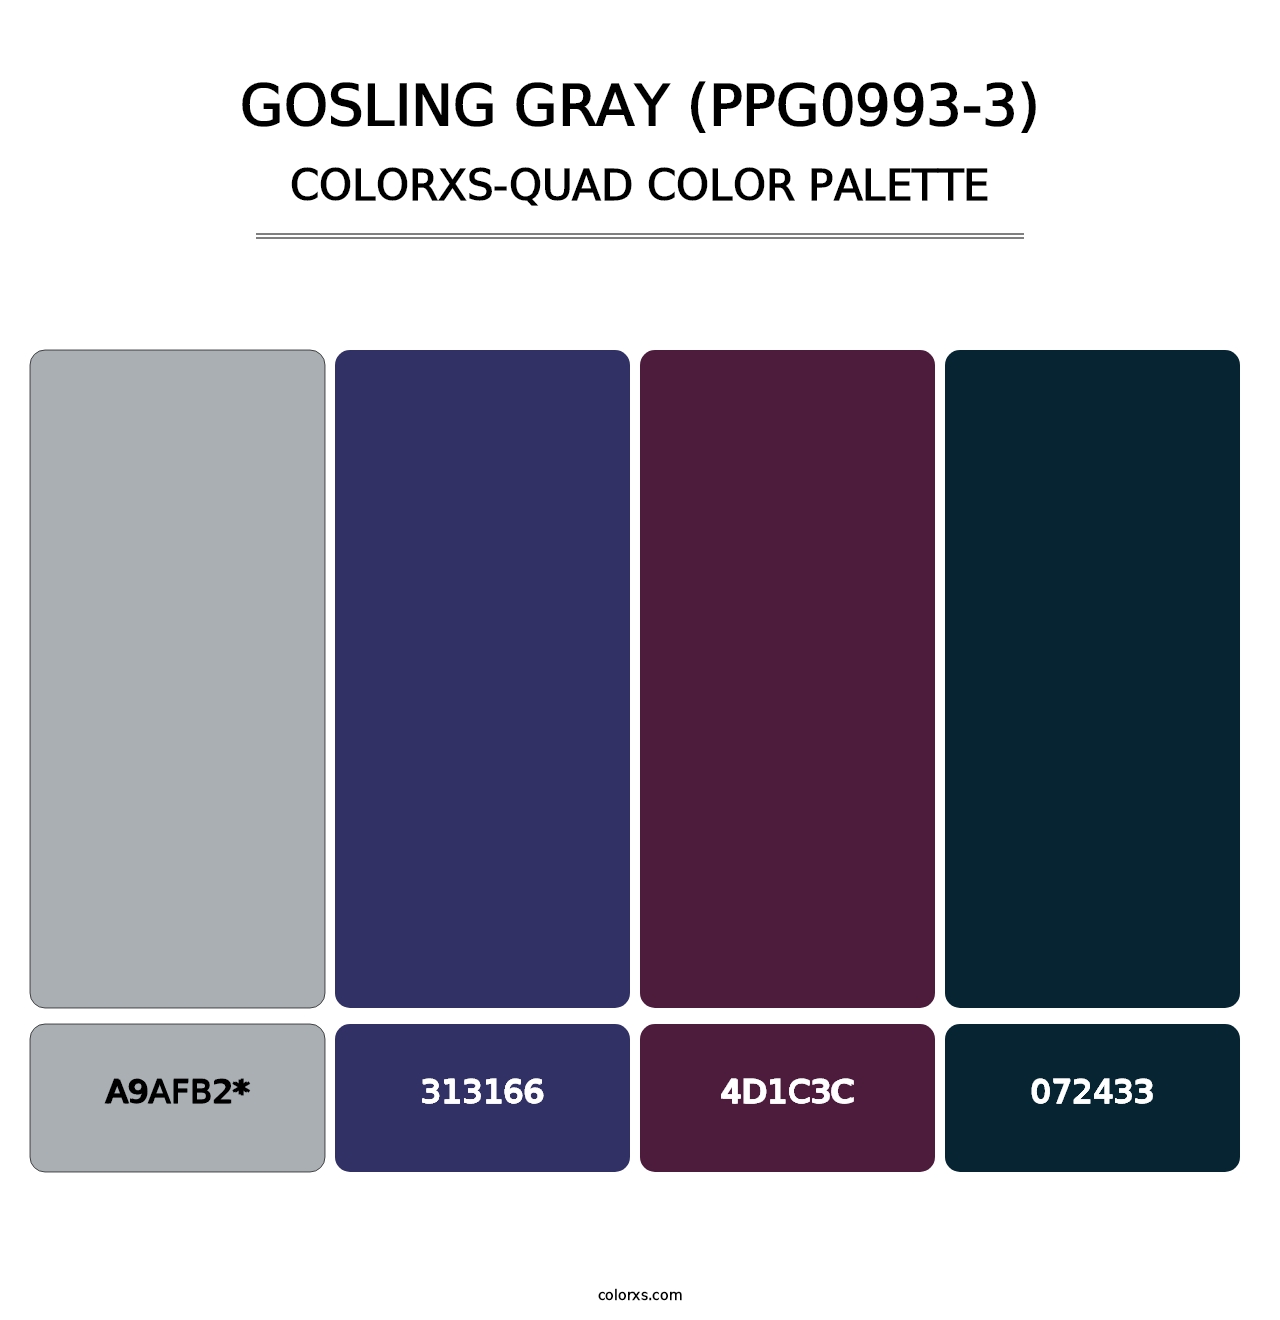 Gosling Gray (PPG0993-3) - Colorxs Quad Palette